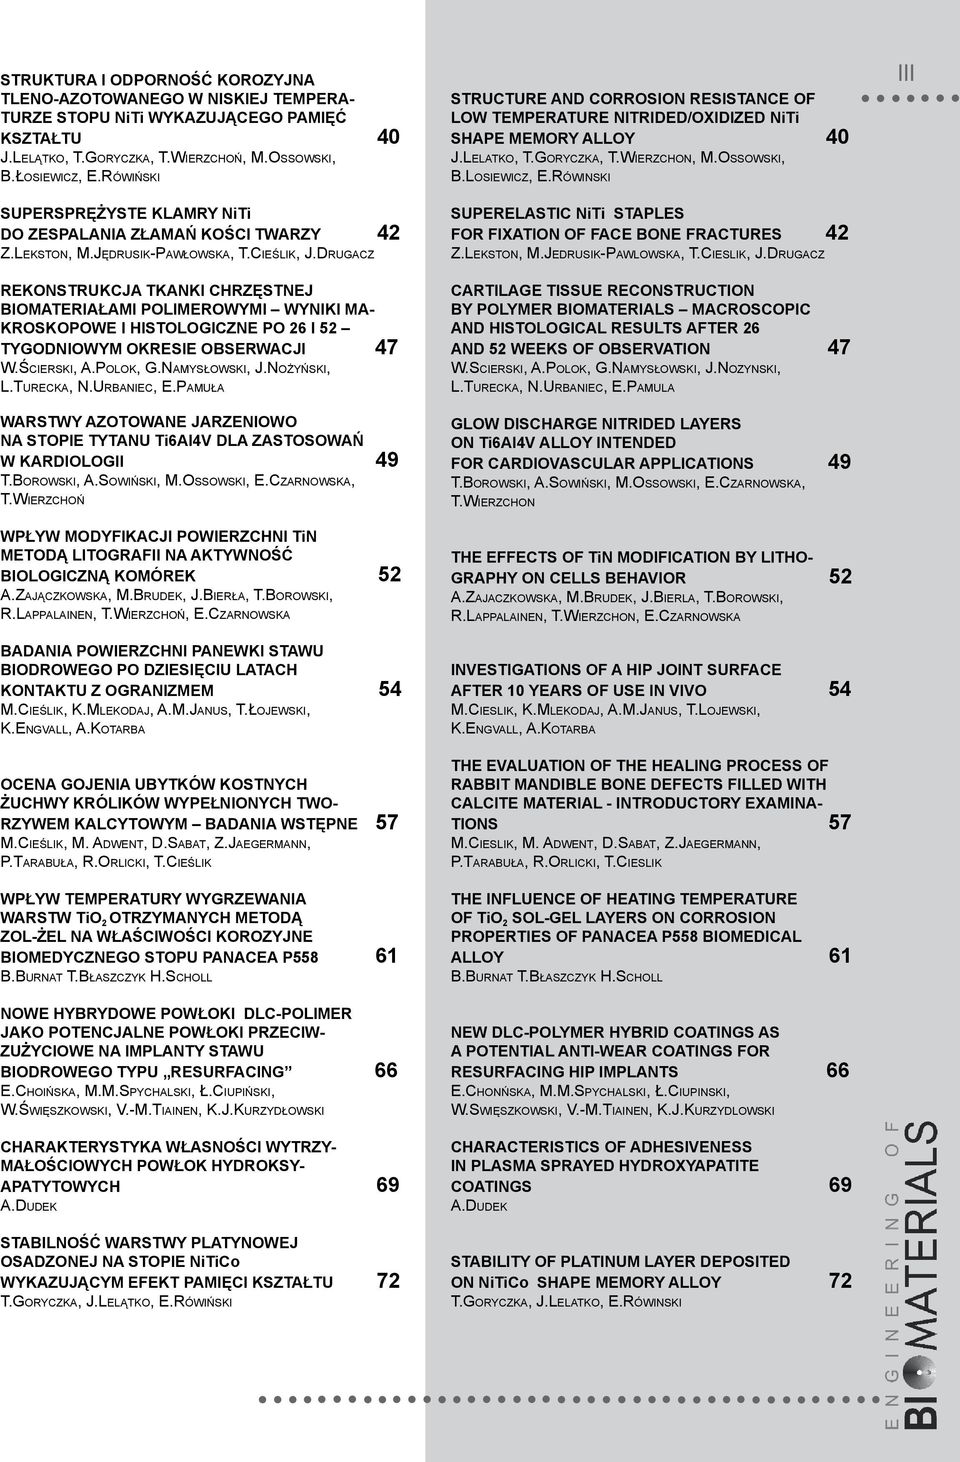 Drugacz Rekonstrukcja tkanki chrzęstnej biomateriałami polimerowymi wyniki makroskopowe i histologiczne po 26 i 52 tygodniowym okresie obserwacji 47 W.Ścierski, A.Polok, G.Namysłowski, J.Nożyński, L.